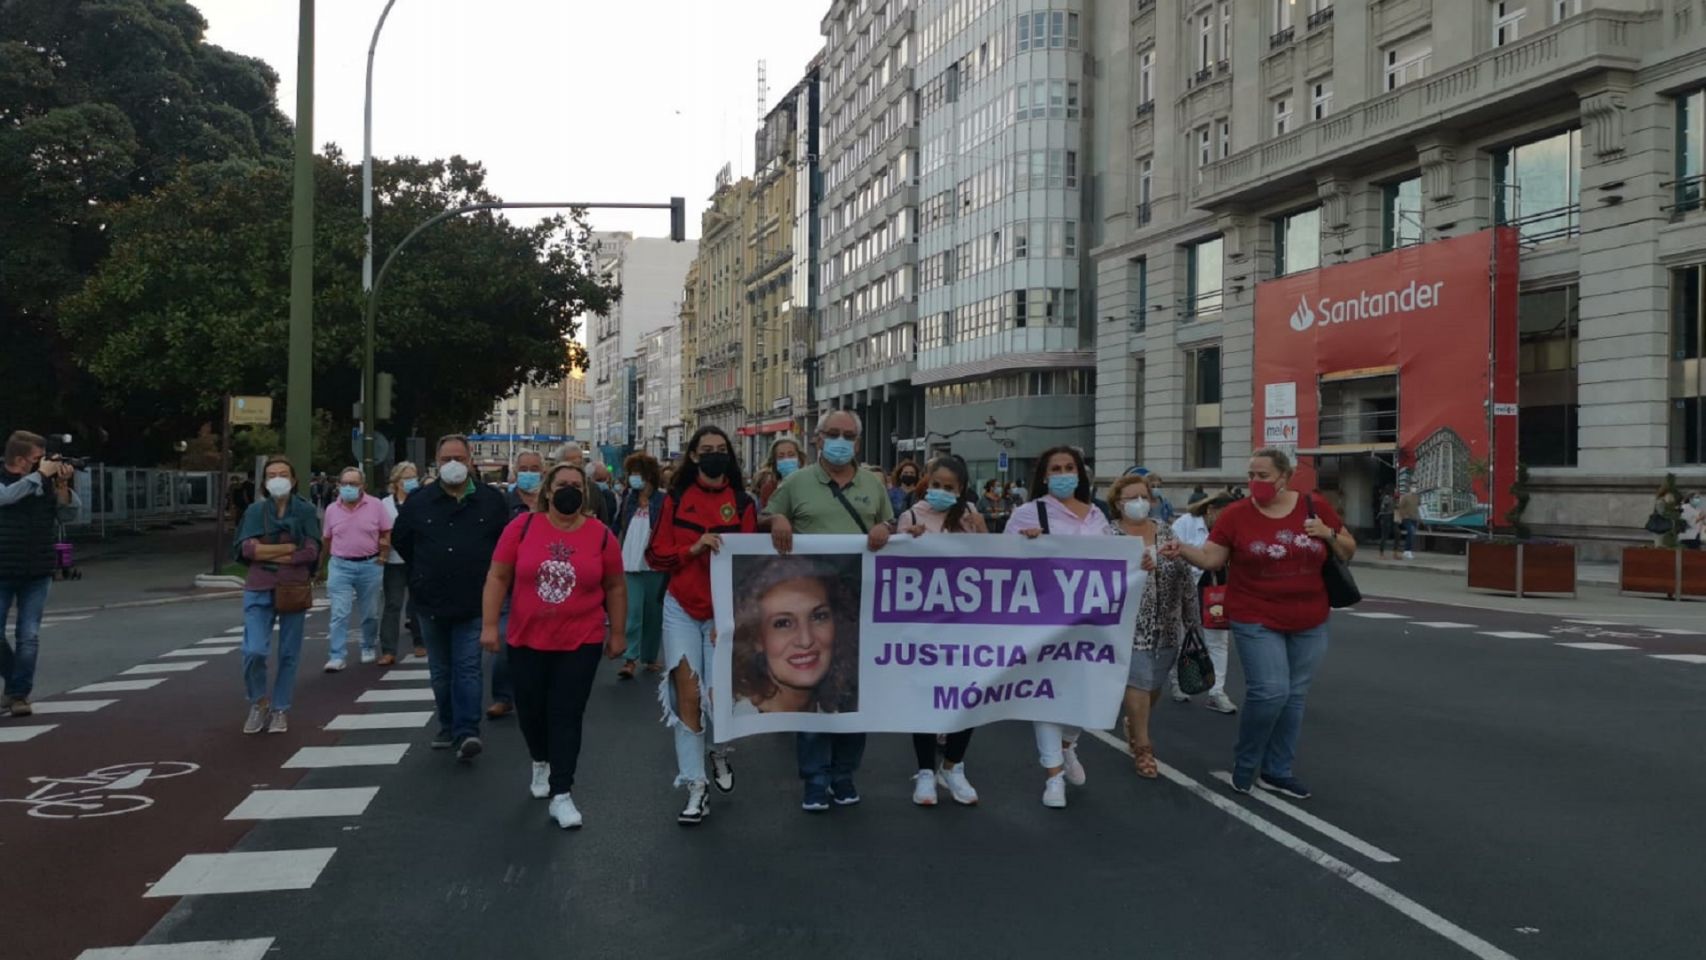 La protesta en repulsa del asesinato de una mujer en O Birloque (A Coruña).